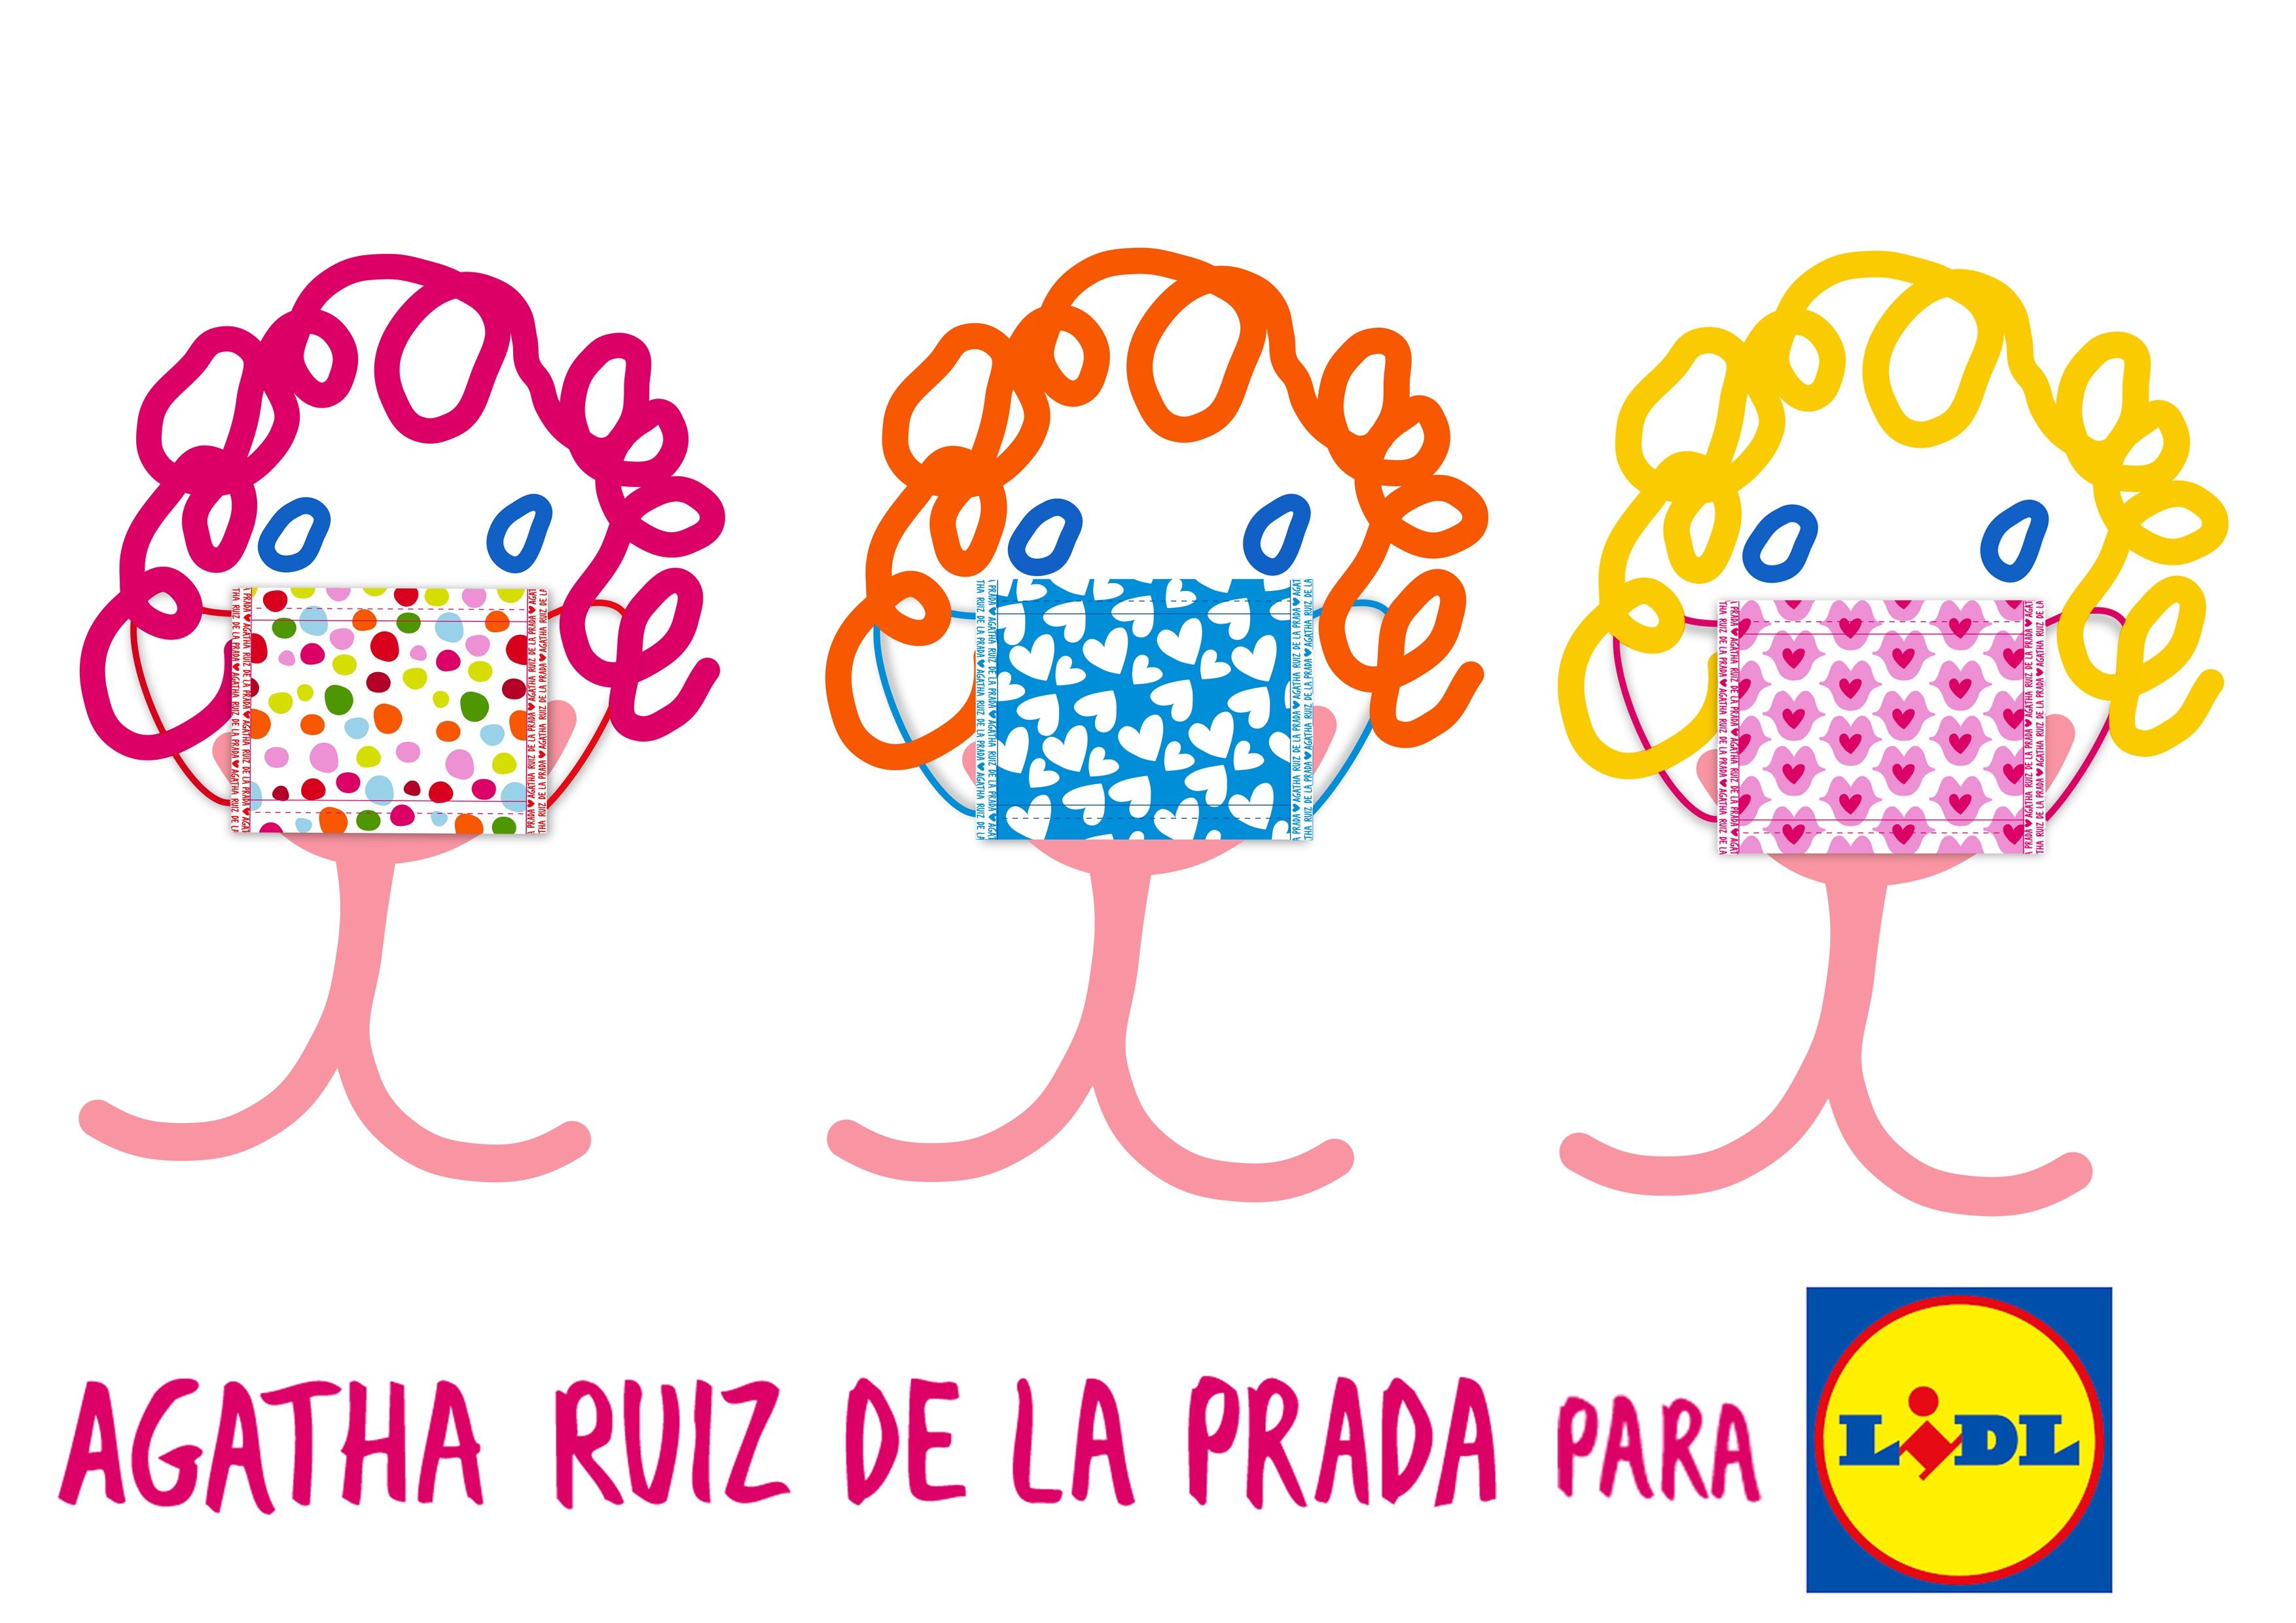 Lidl y Agatha Ruiz de la Prada lanzan una colección de mascarillas solidarias